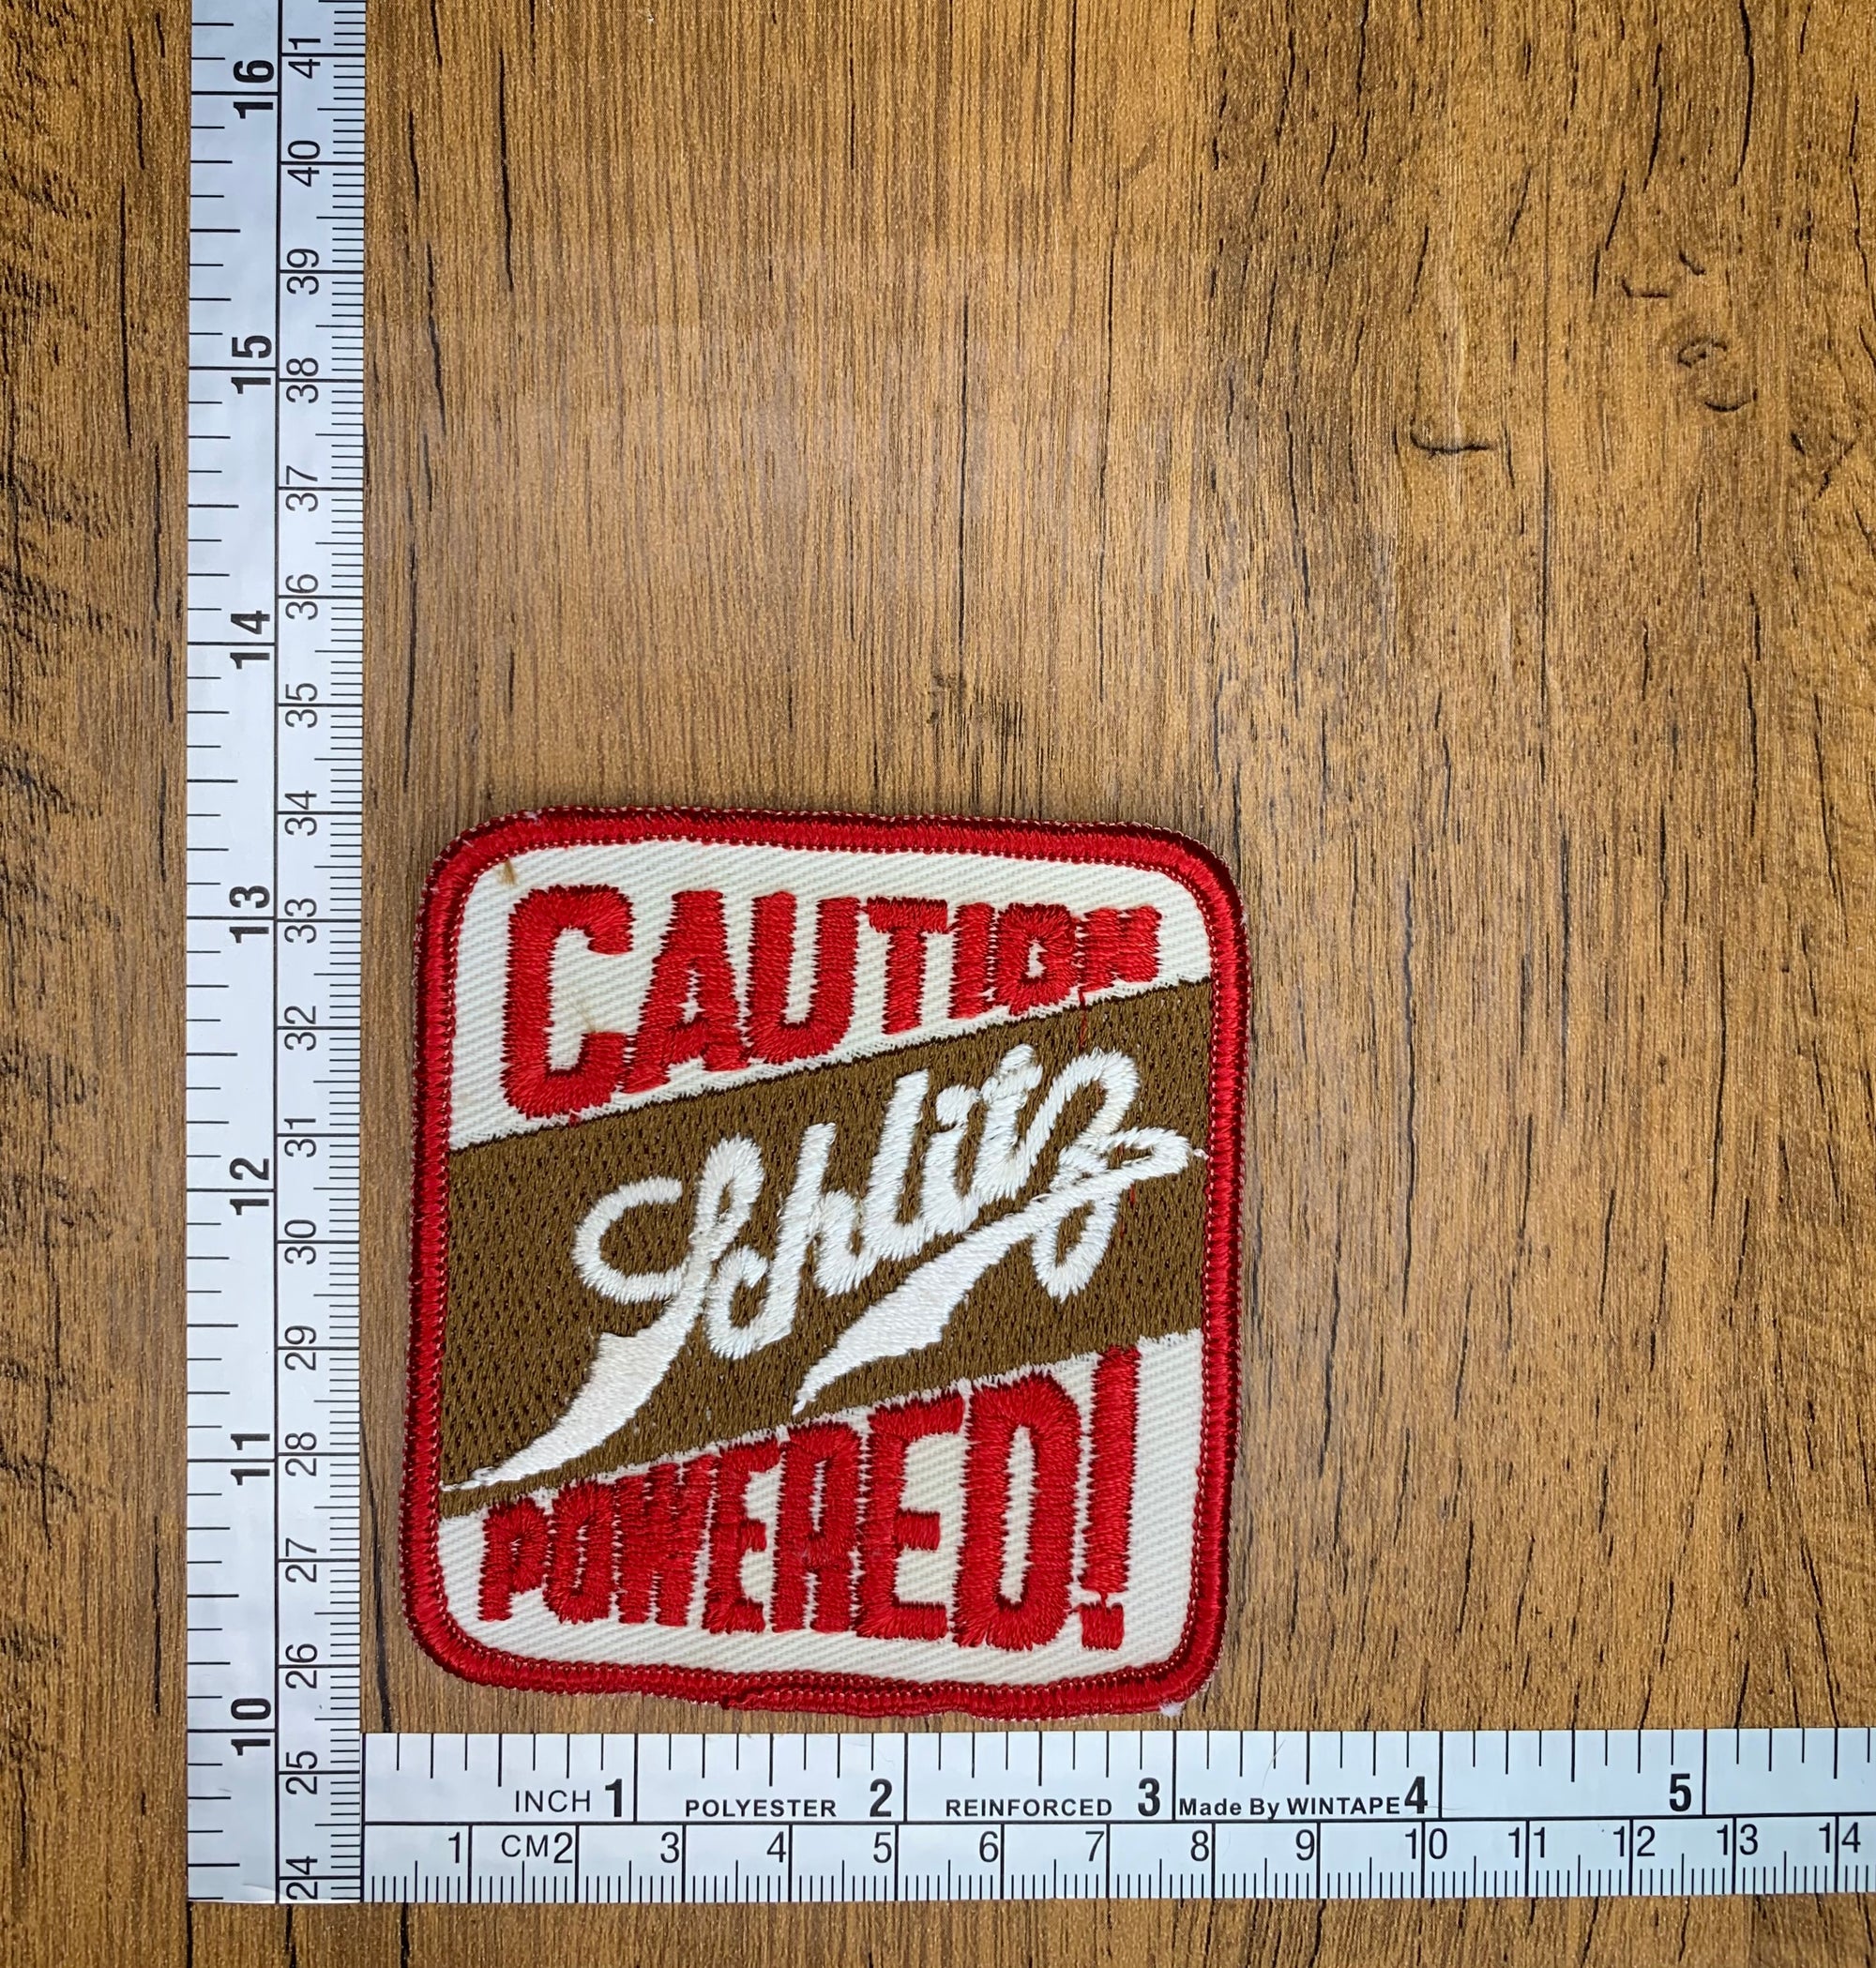 Vintage Caution Schlitz Powder